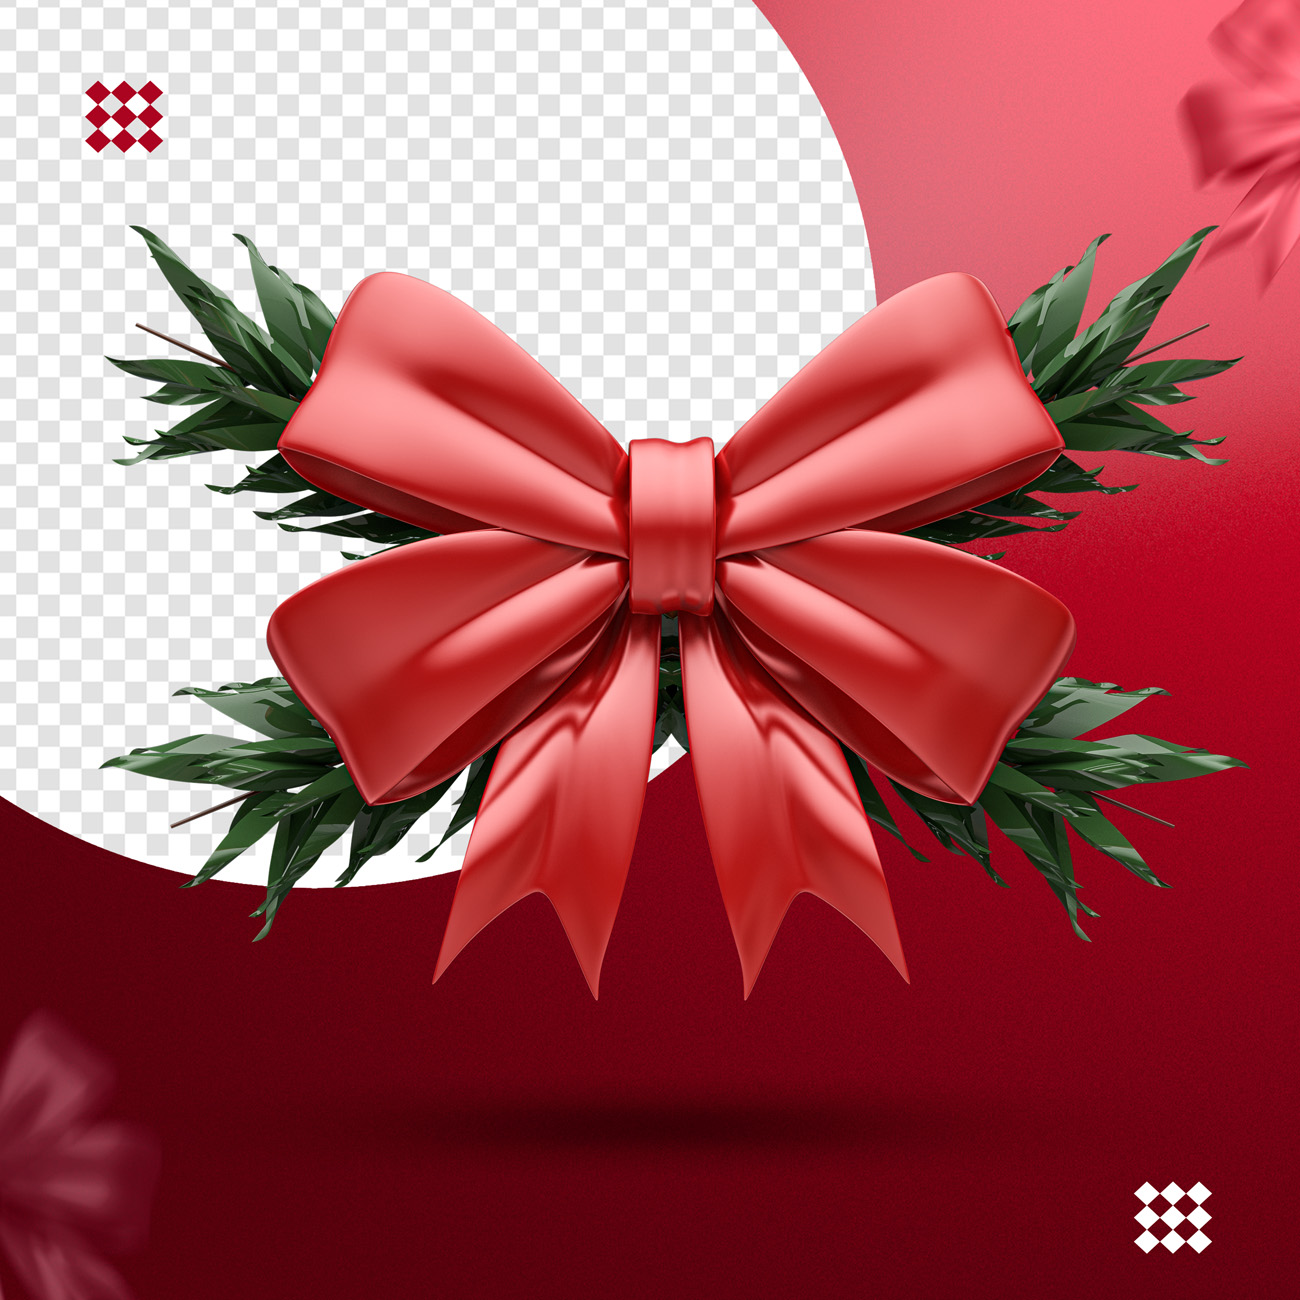 红色蝴蝶结白色圣诞球三维立体图标素材 3d red bow